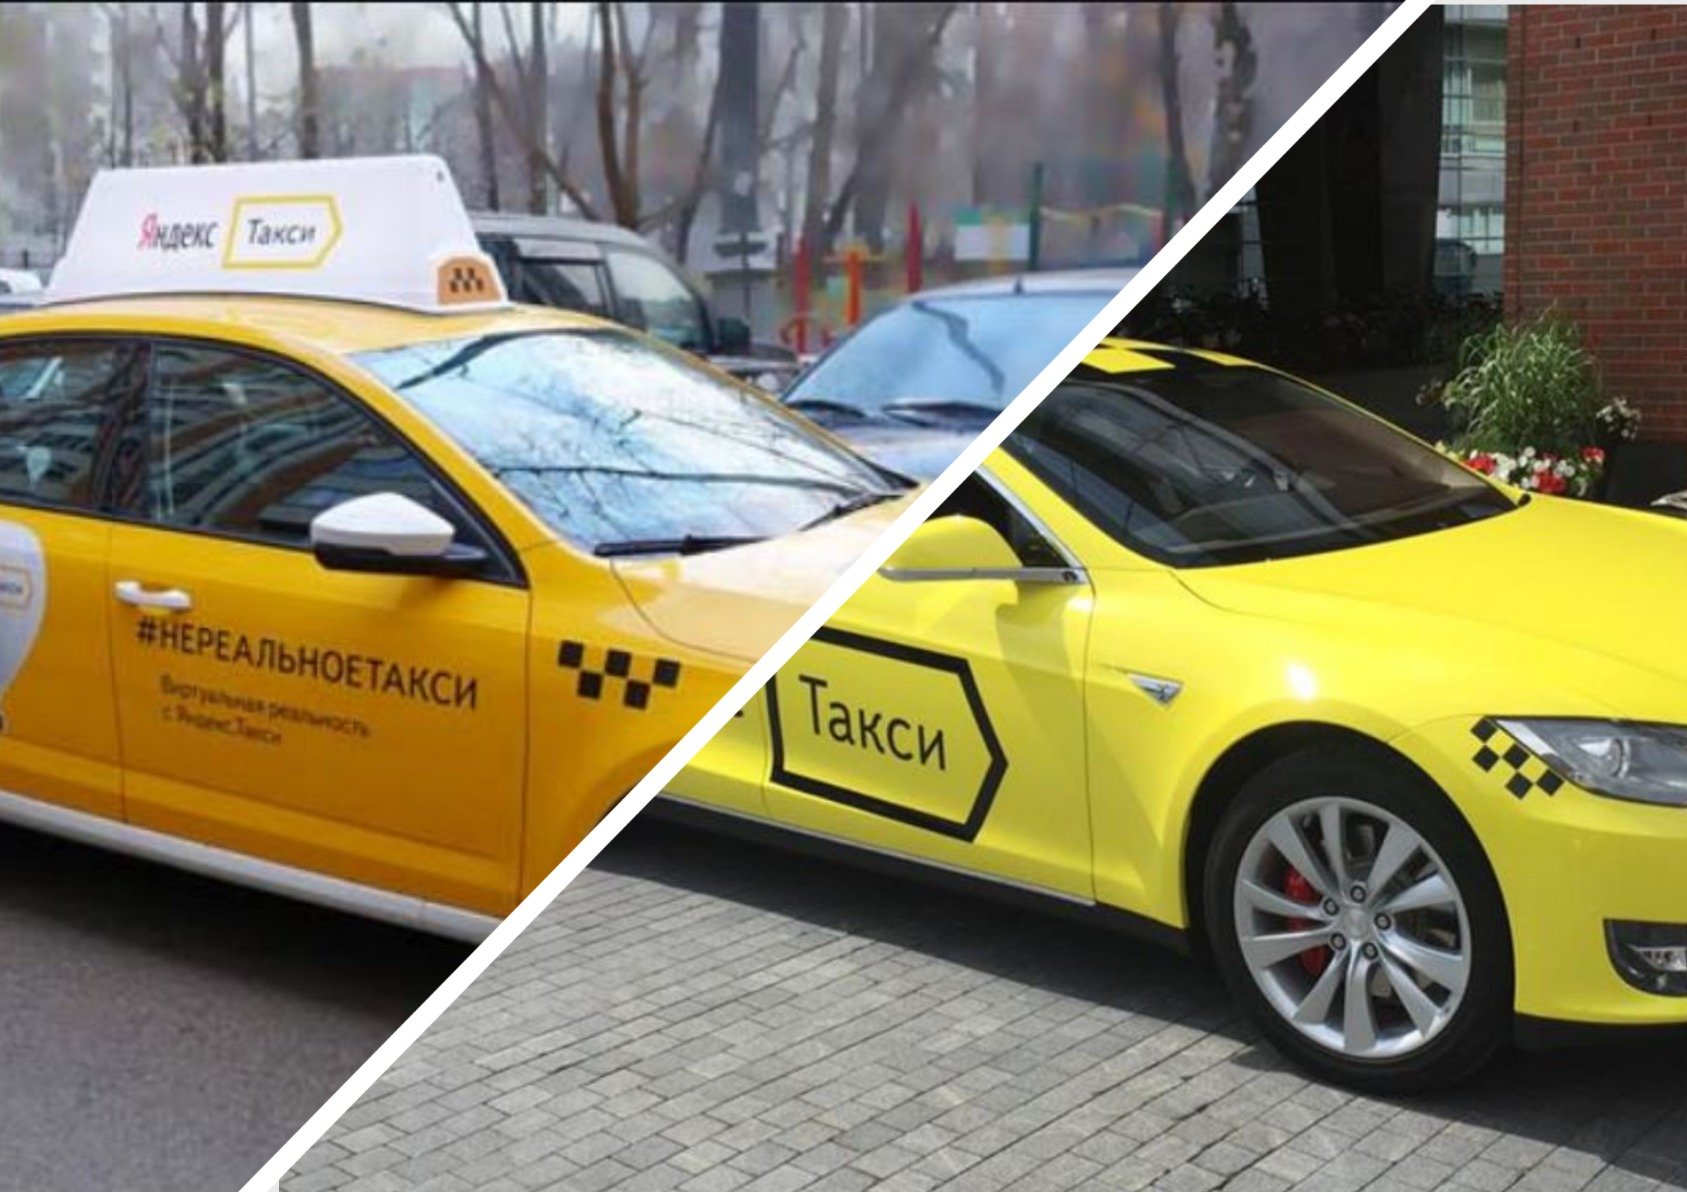 Телефон бизнес такси. Машина "такси".